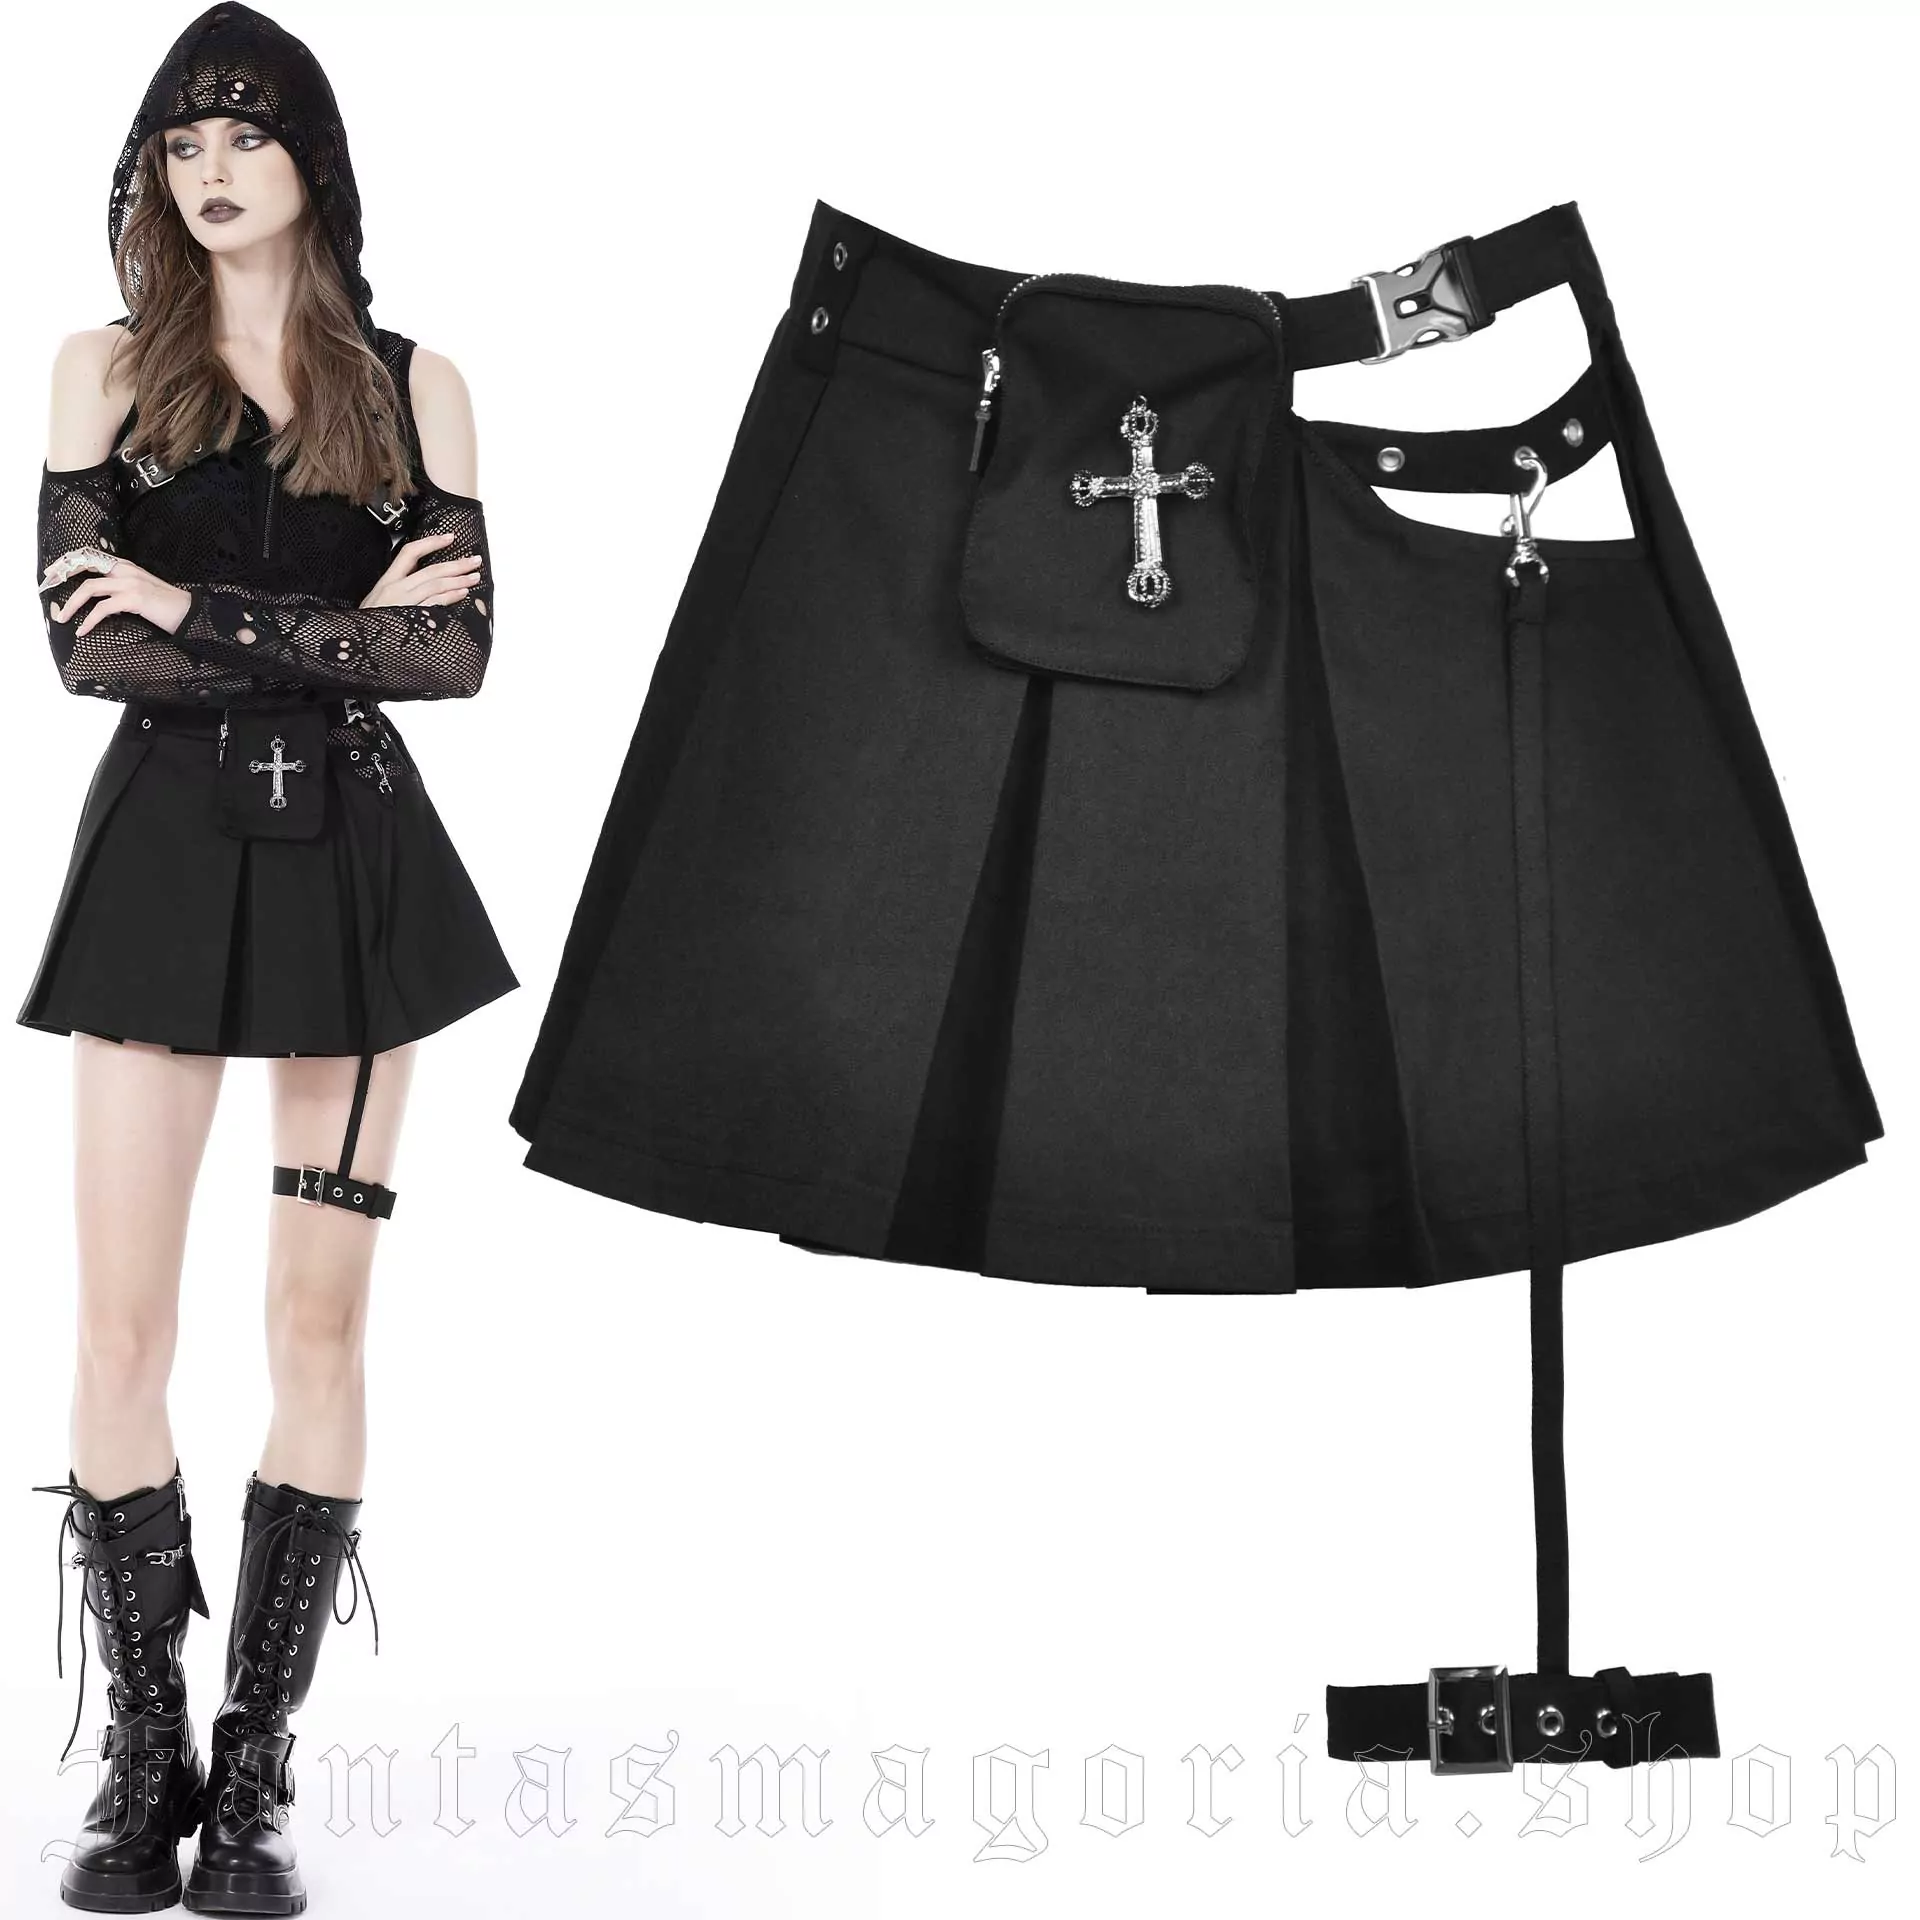 Xenon Skirt - Dark in Love - KW255 1